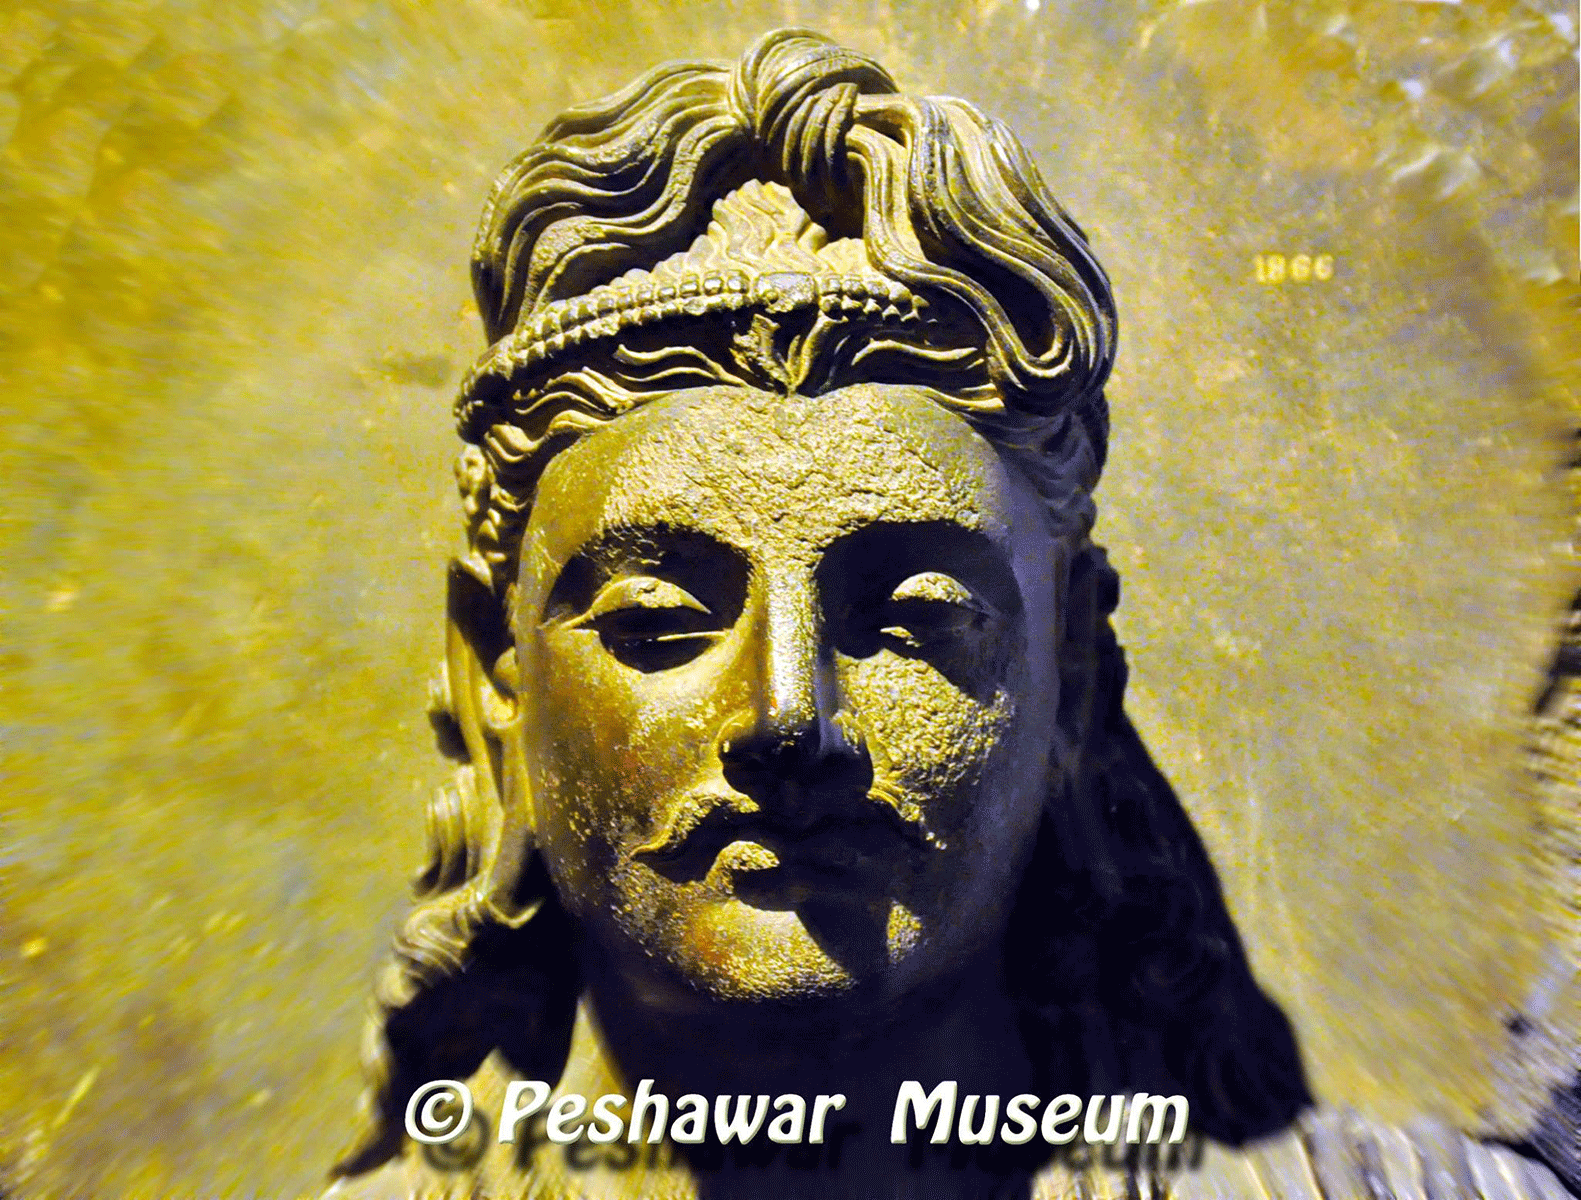 Peshawar Museum, Pakistan -  Artifact